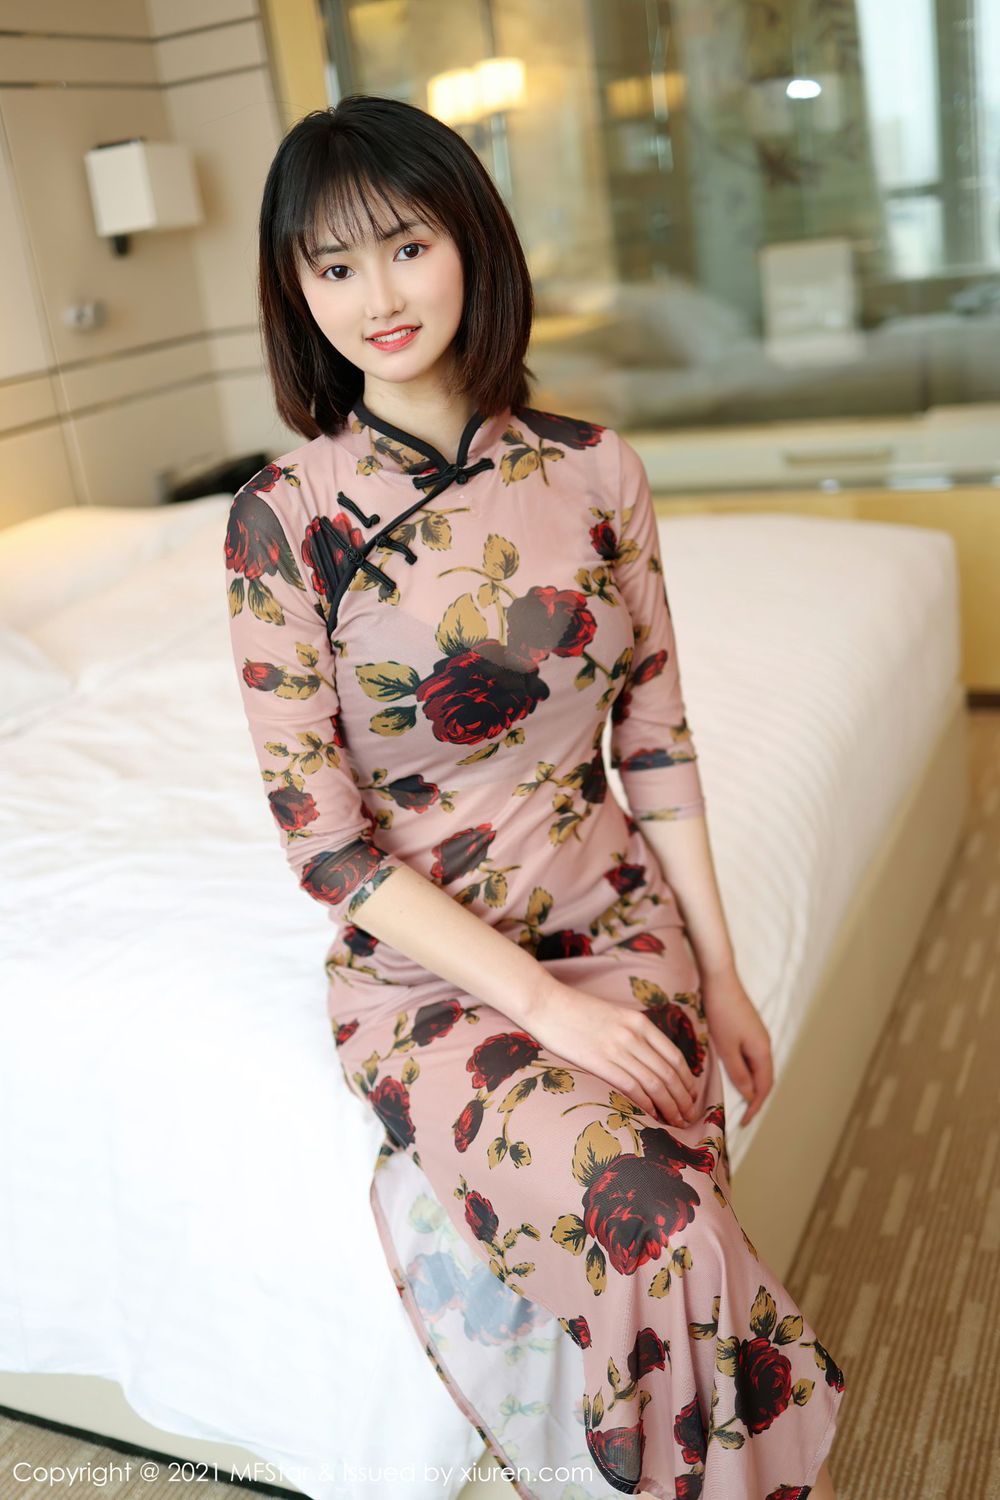 新人模特墨韩巡礼古典旗袍修长美腿系列首套写真